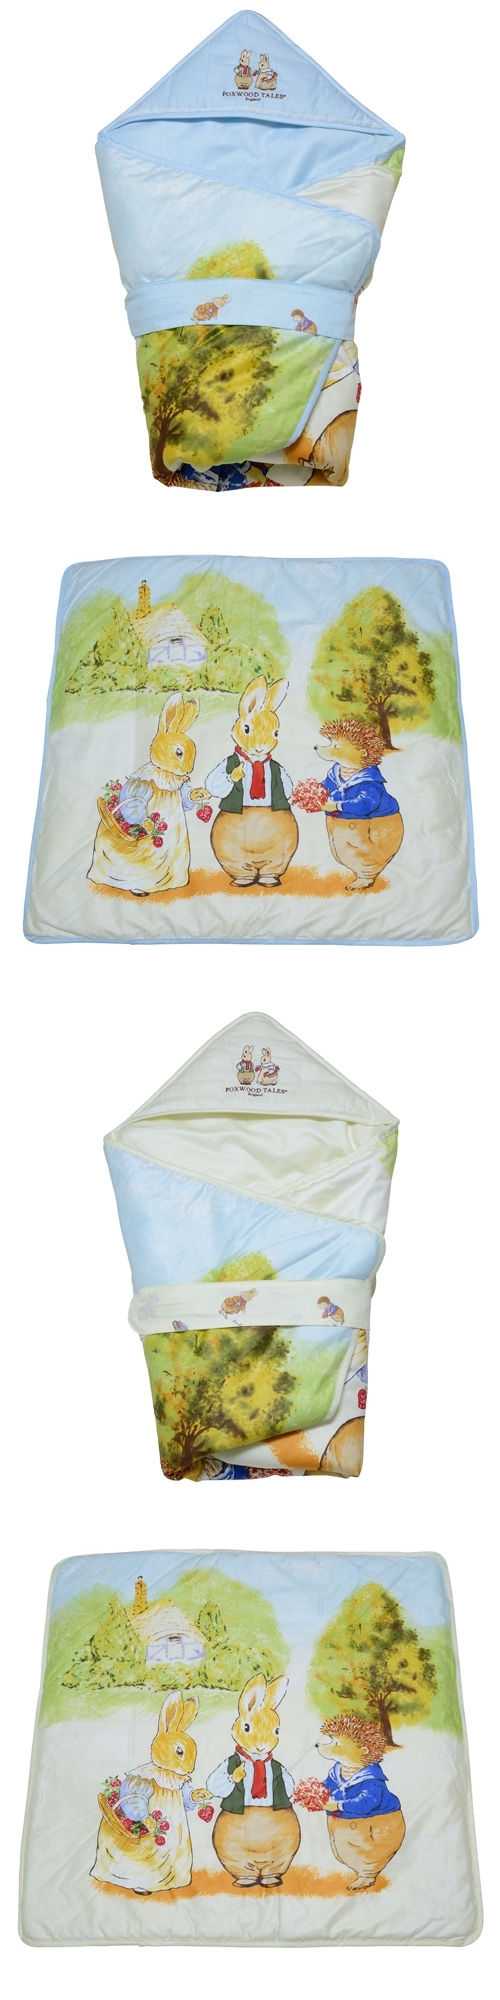 狐狸村傳奇-精梳棉嬰兒冬夏兩用包巾(藍色/米色)301-0122